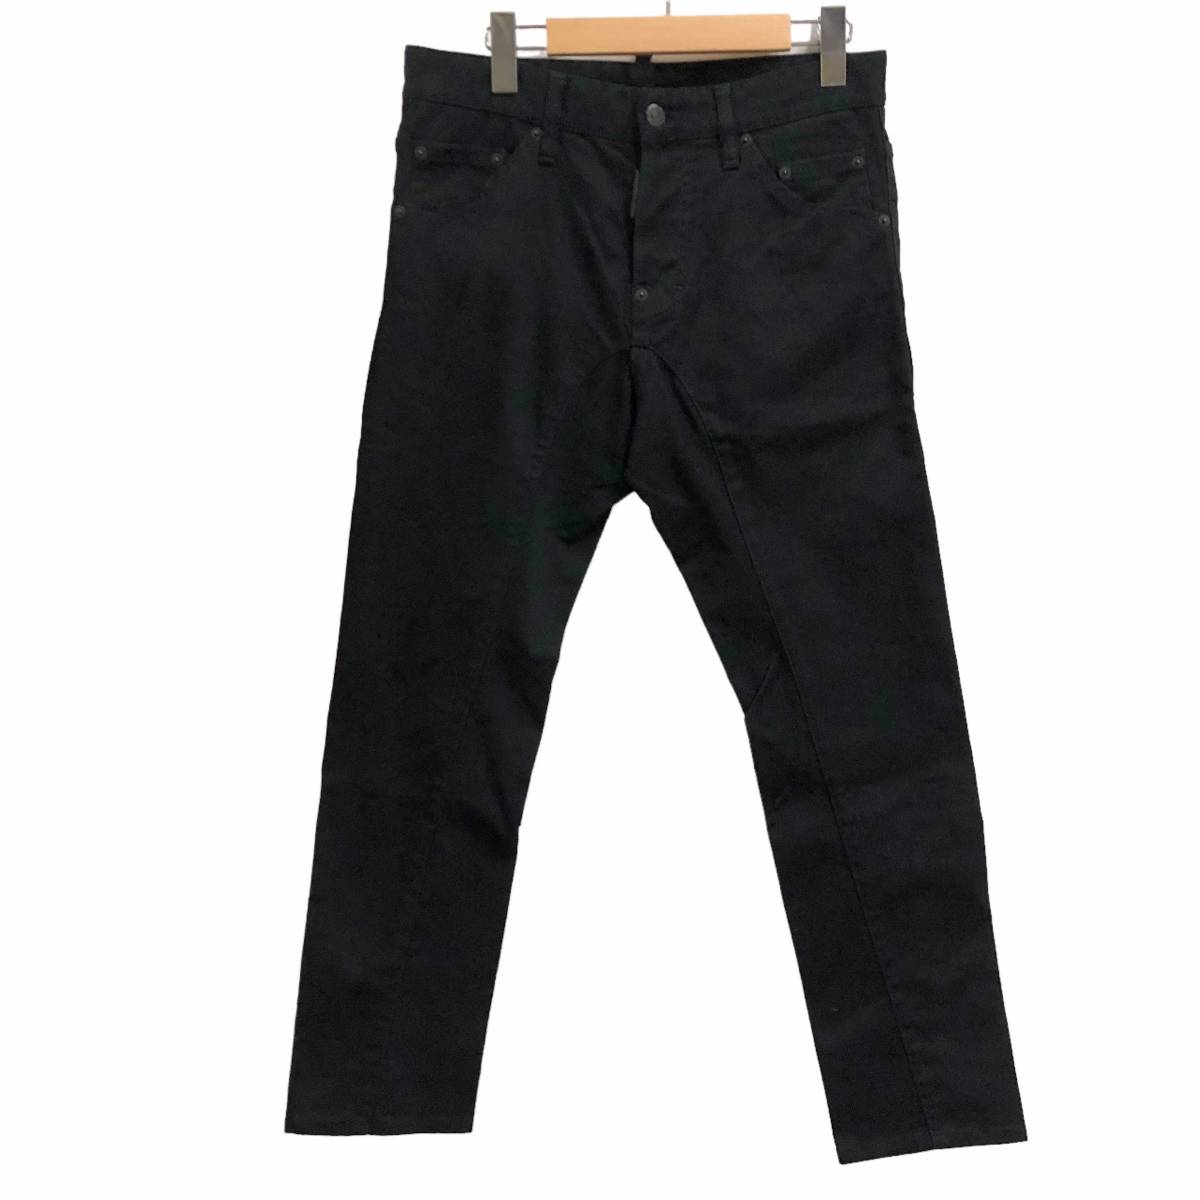 DSQUARED2 ディースクエアード Black Twisted Jeans ブラック ツイスト ジーンズ デニム S74LA0383 サイズ44 店舗受取可